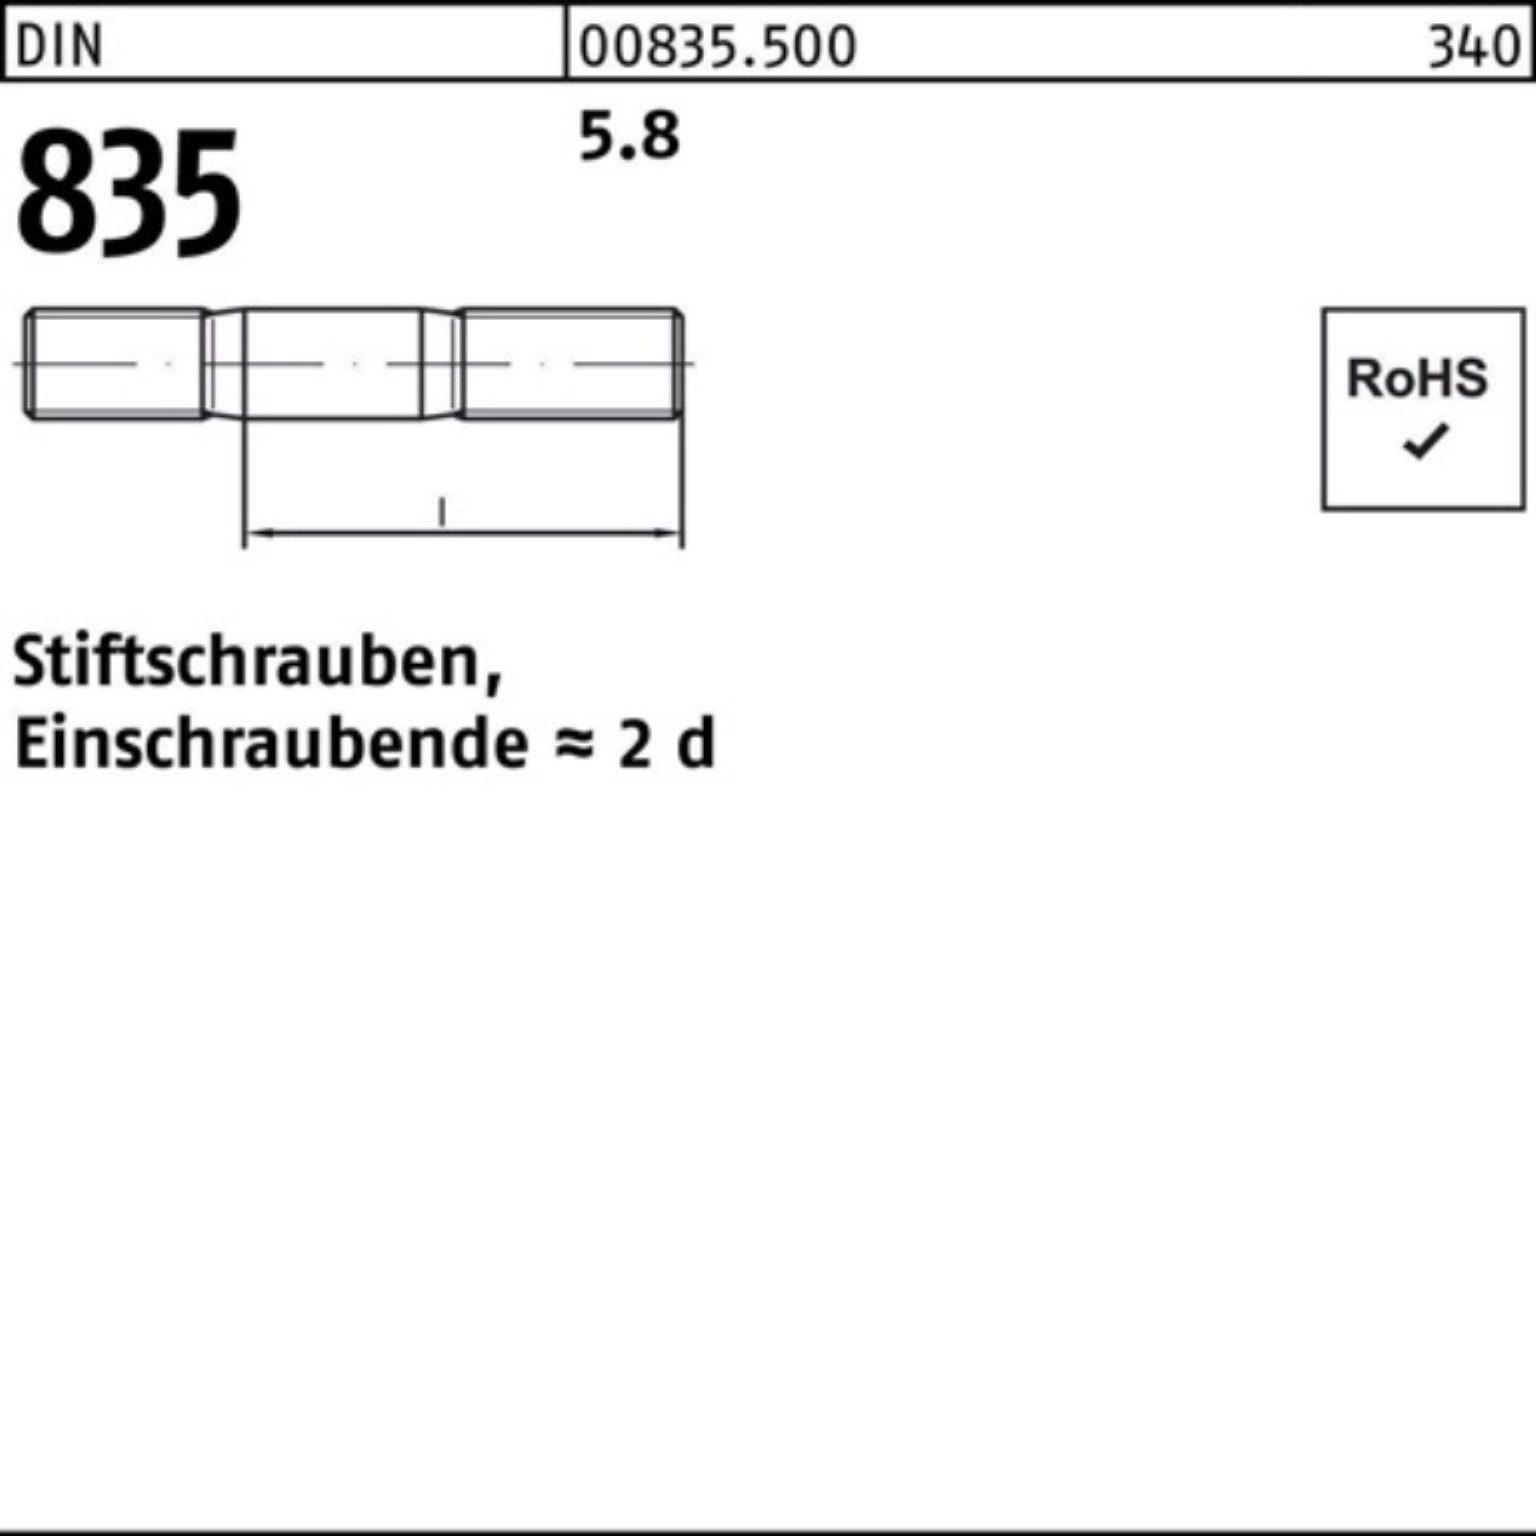 Stü Reyher DIN Pack 100er Stiftschraube M12x 25 50 835 Stiftschraube Einschraubende=2d 5.8